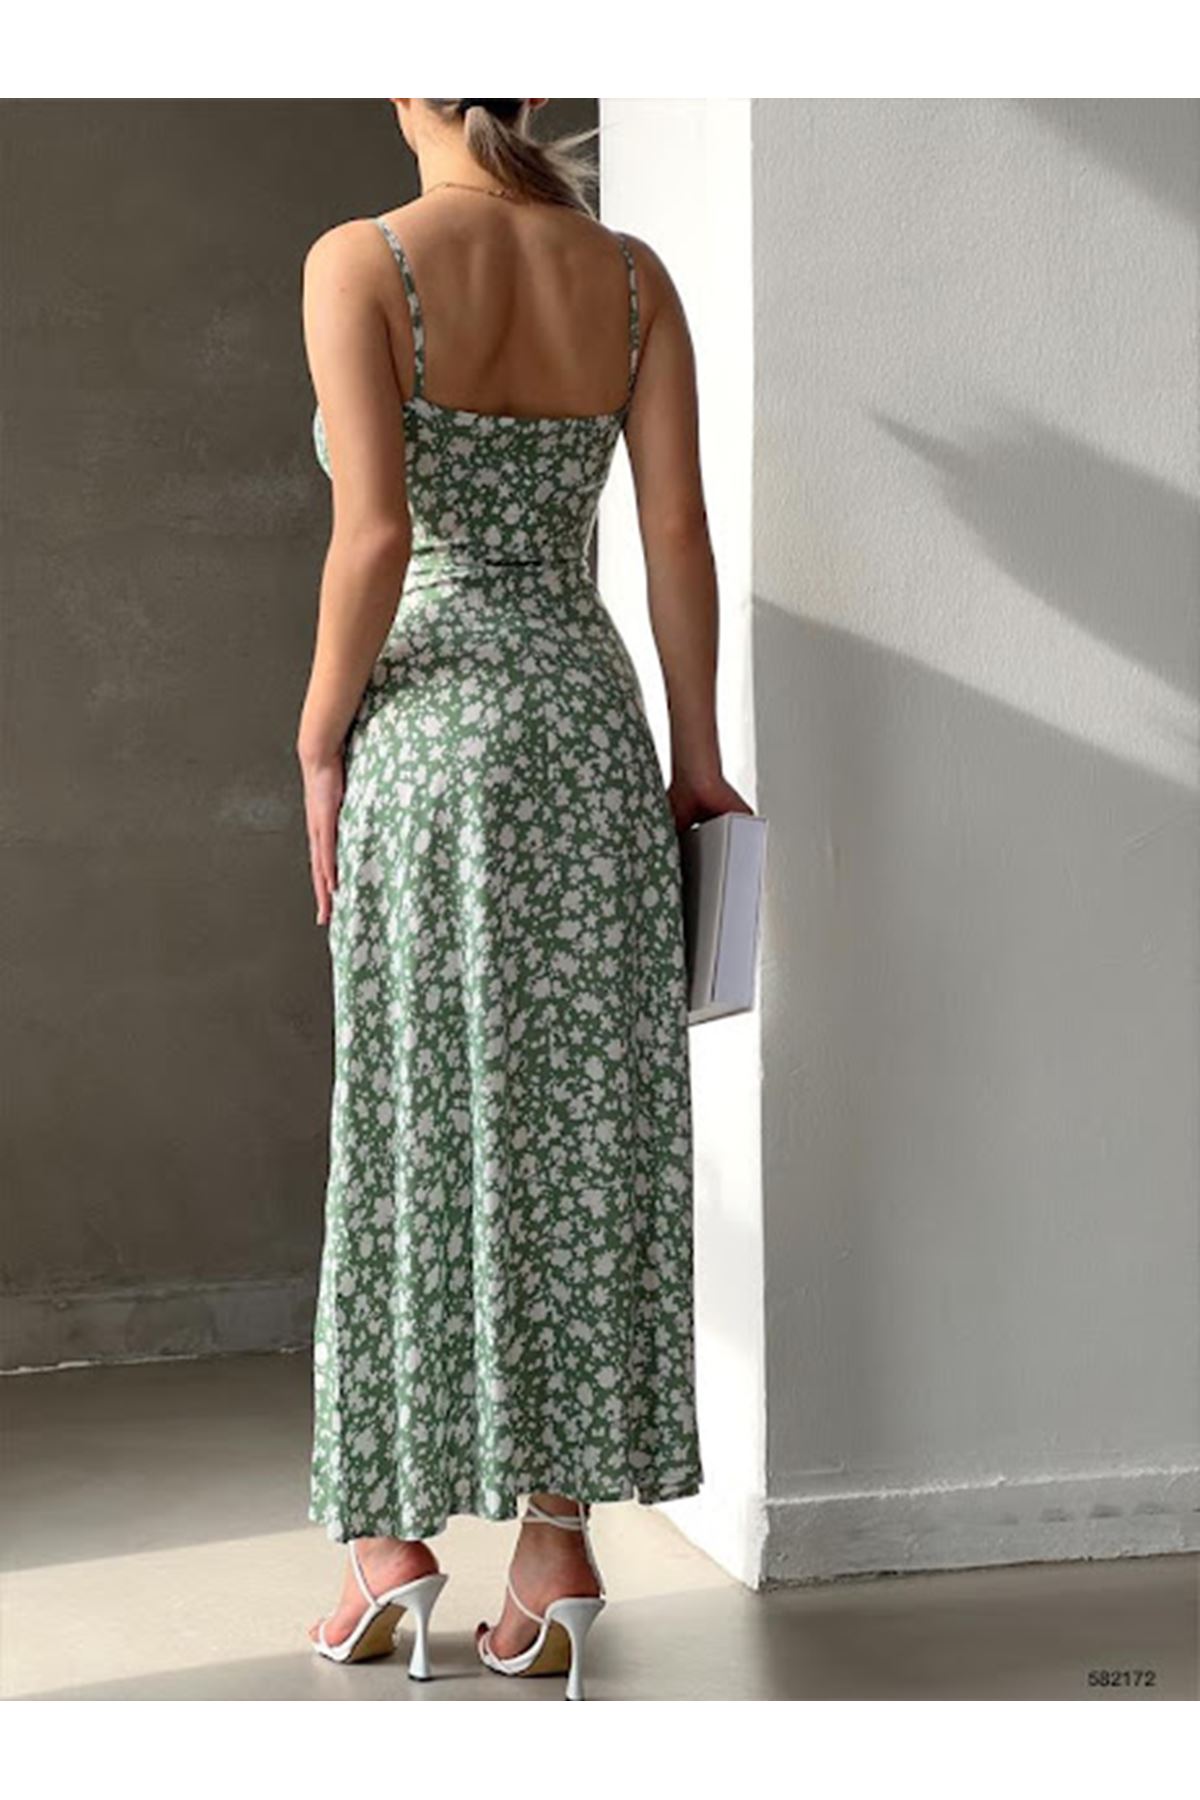 Kadın Askılı Bilek Boy Yeşil Yırtmaçlı Yazlık Dokuma Elbise 6C-2112